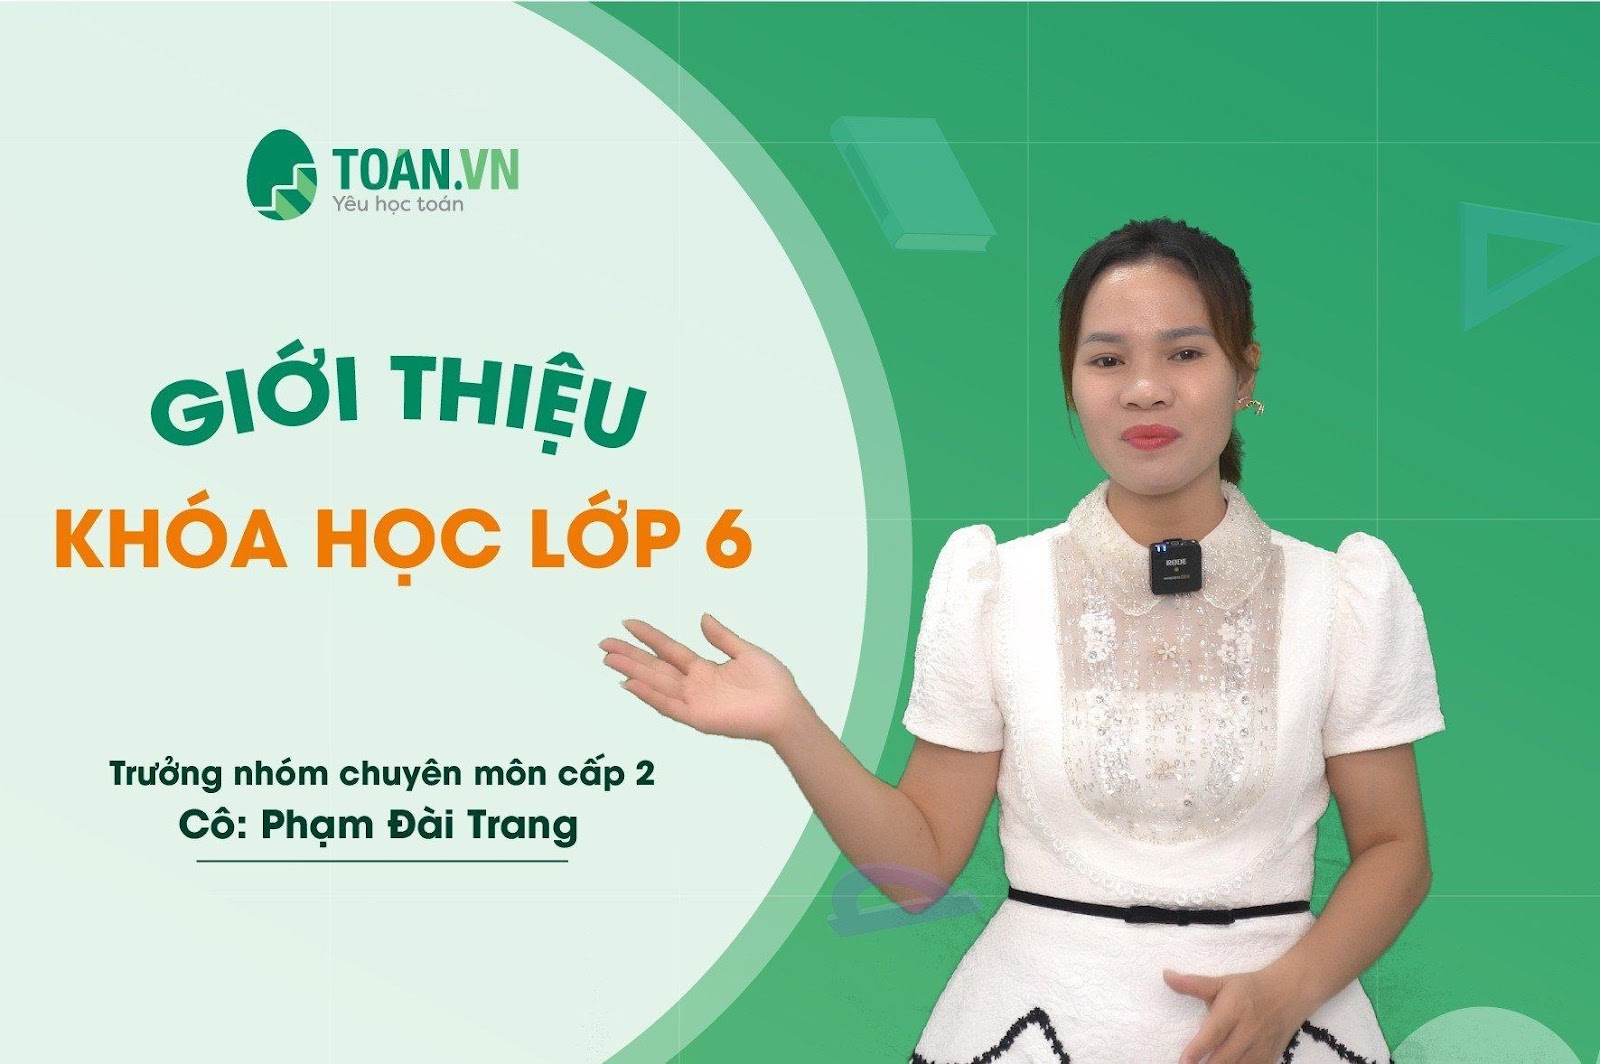 Khoá học toán lớp 6 chất lượng cao tại Toan.vn